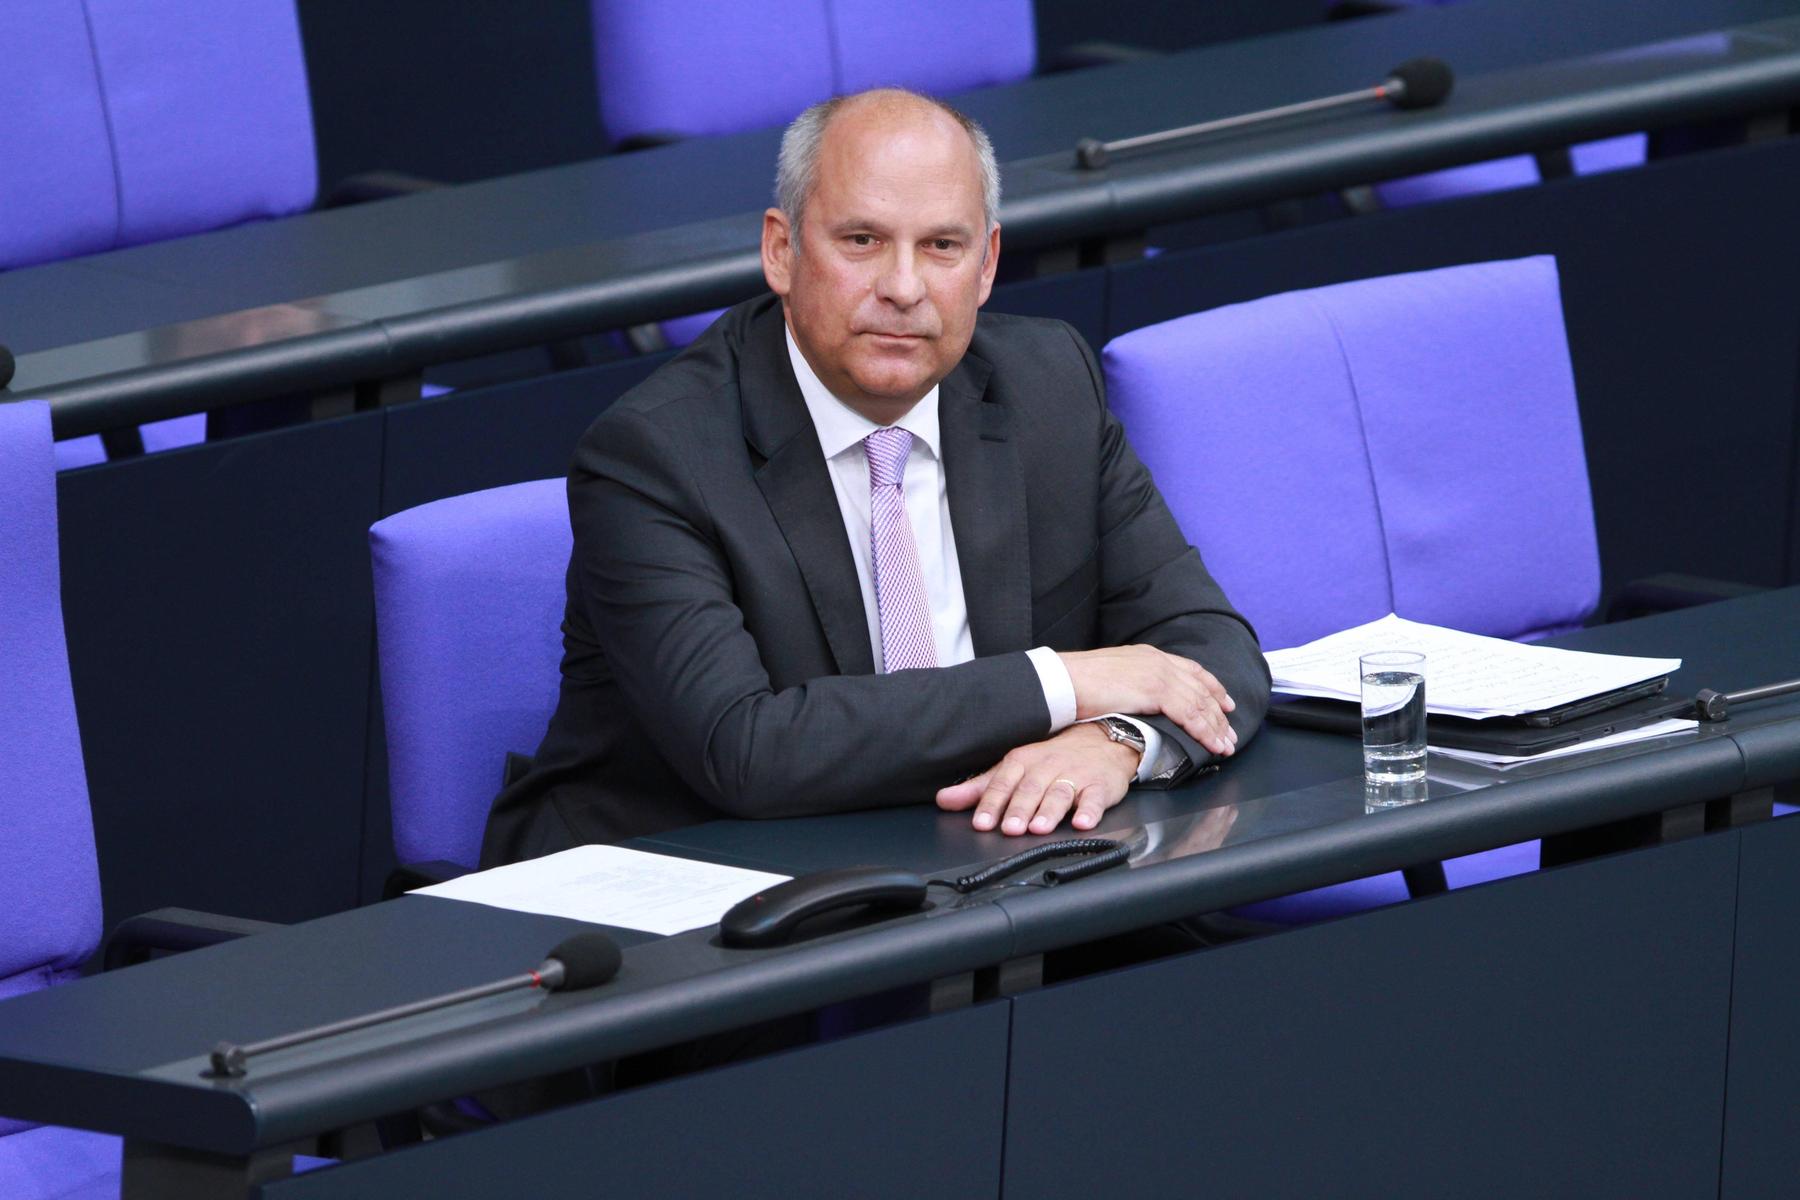 hessischer minister: deutschland könnte ukraine bei rekrutierung unterstützen